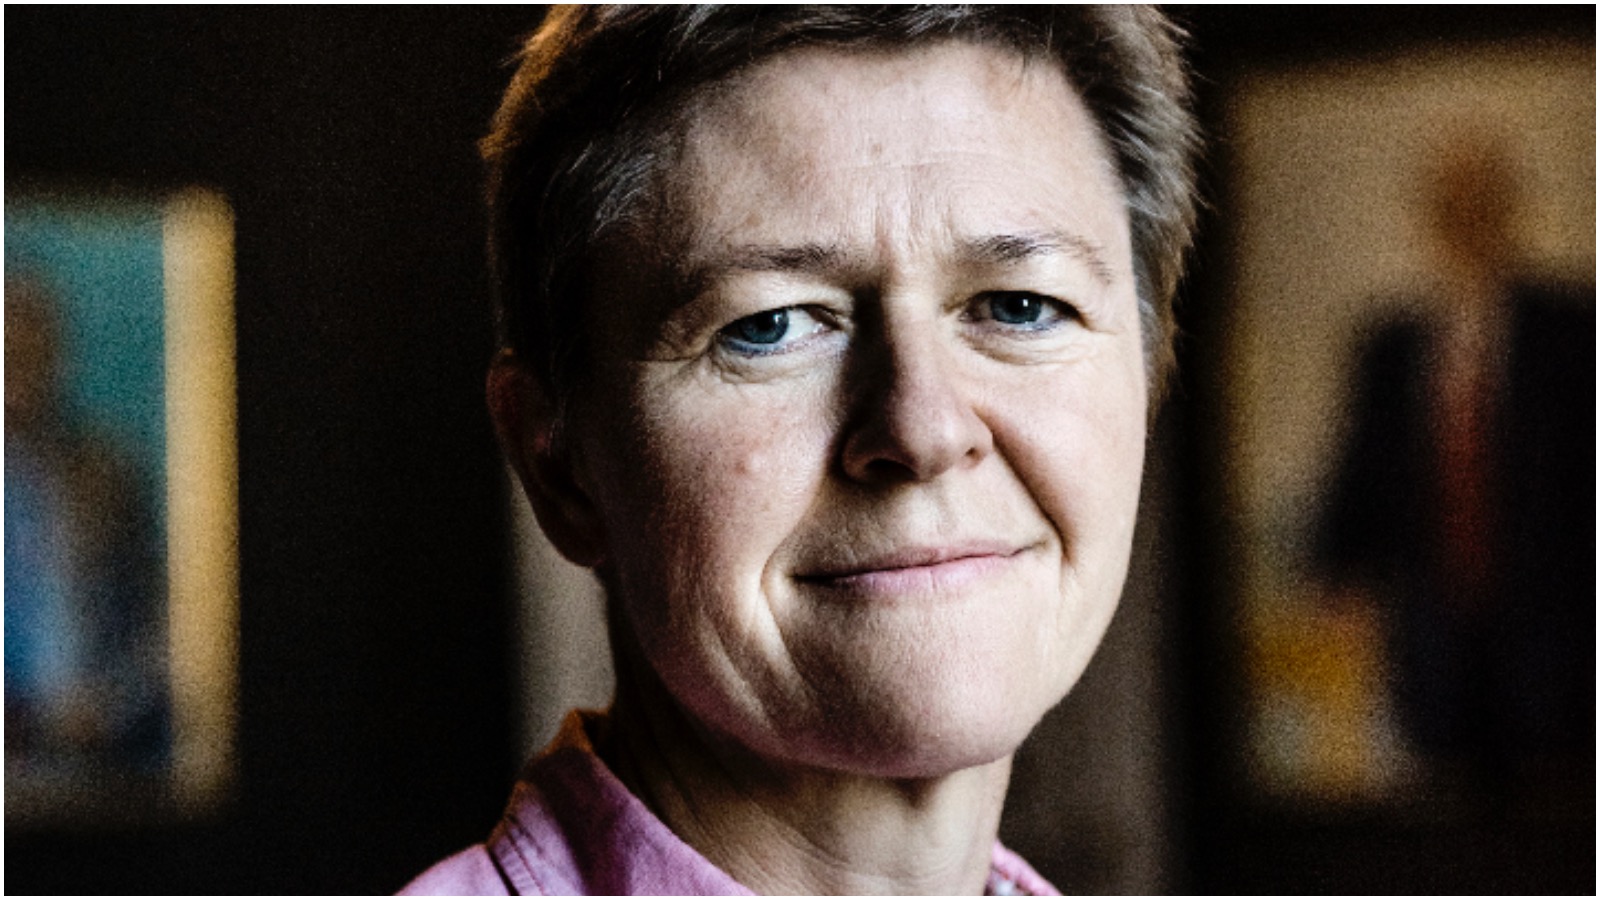 Josephine Fock om S-flygtningeudspil: “Det handler først og fremmest om at forskanse Danmark og lukke af for udefrakommende”